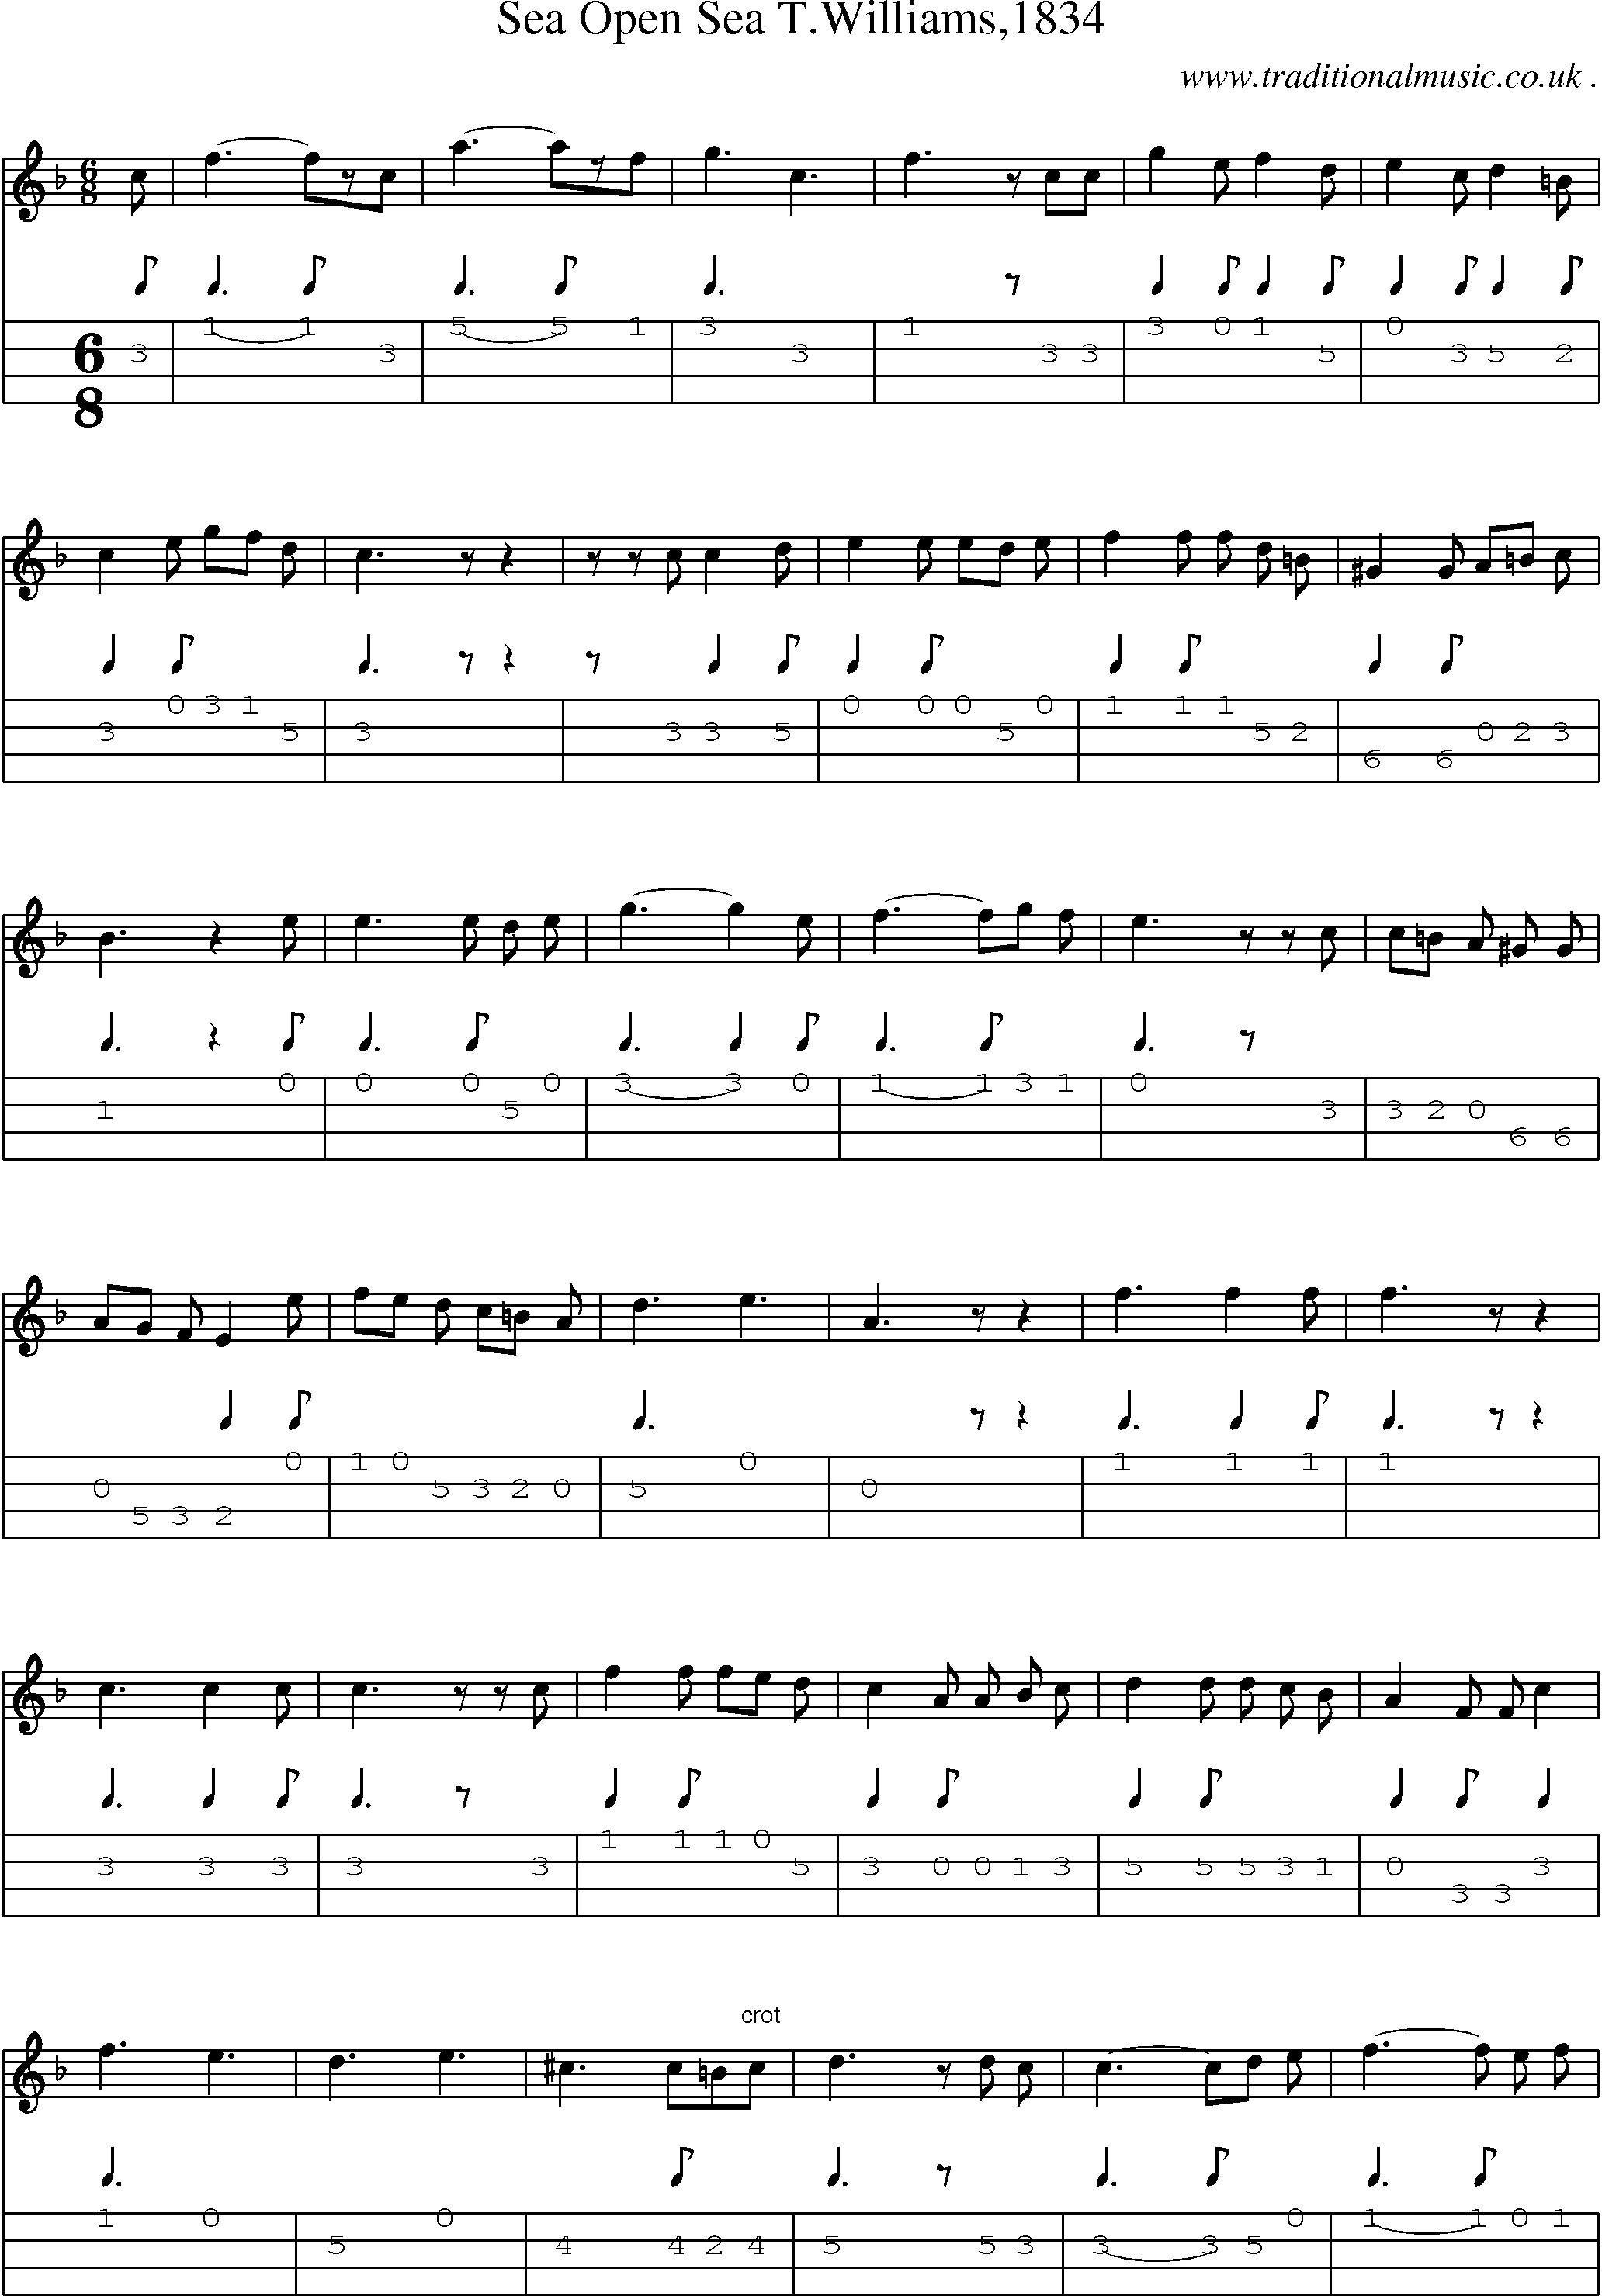 Sheet-Music and Mandolin Tabs for Sea Open Sea Twilliams1834